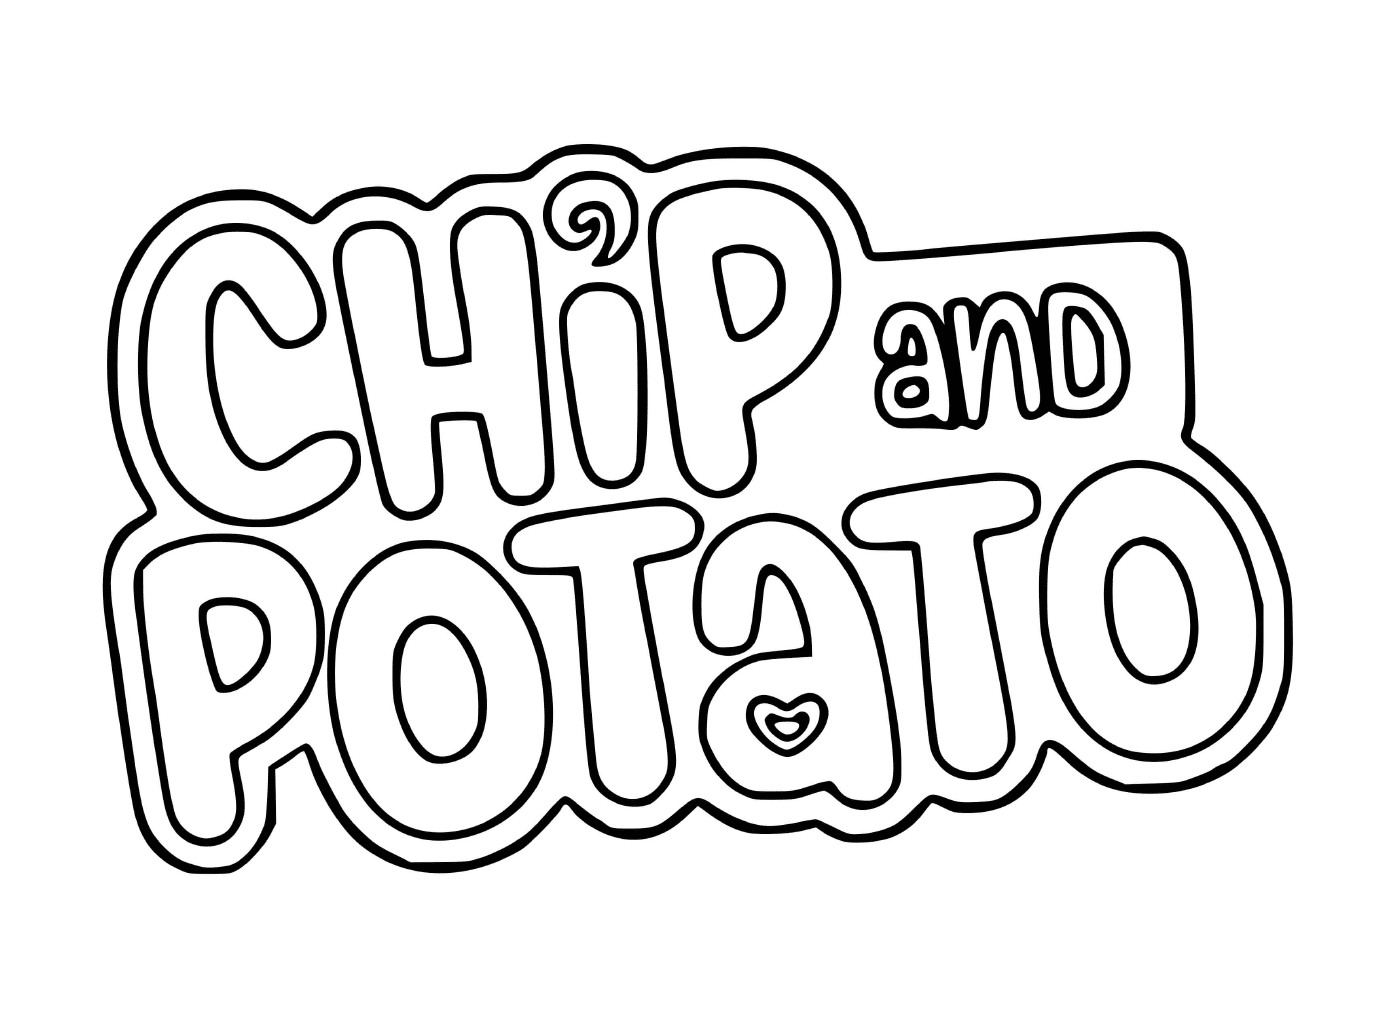  Chip und Kartoffel-Logo 